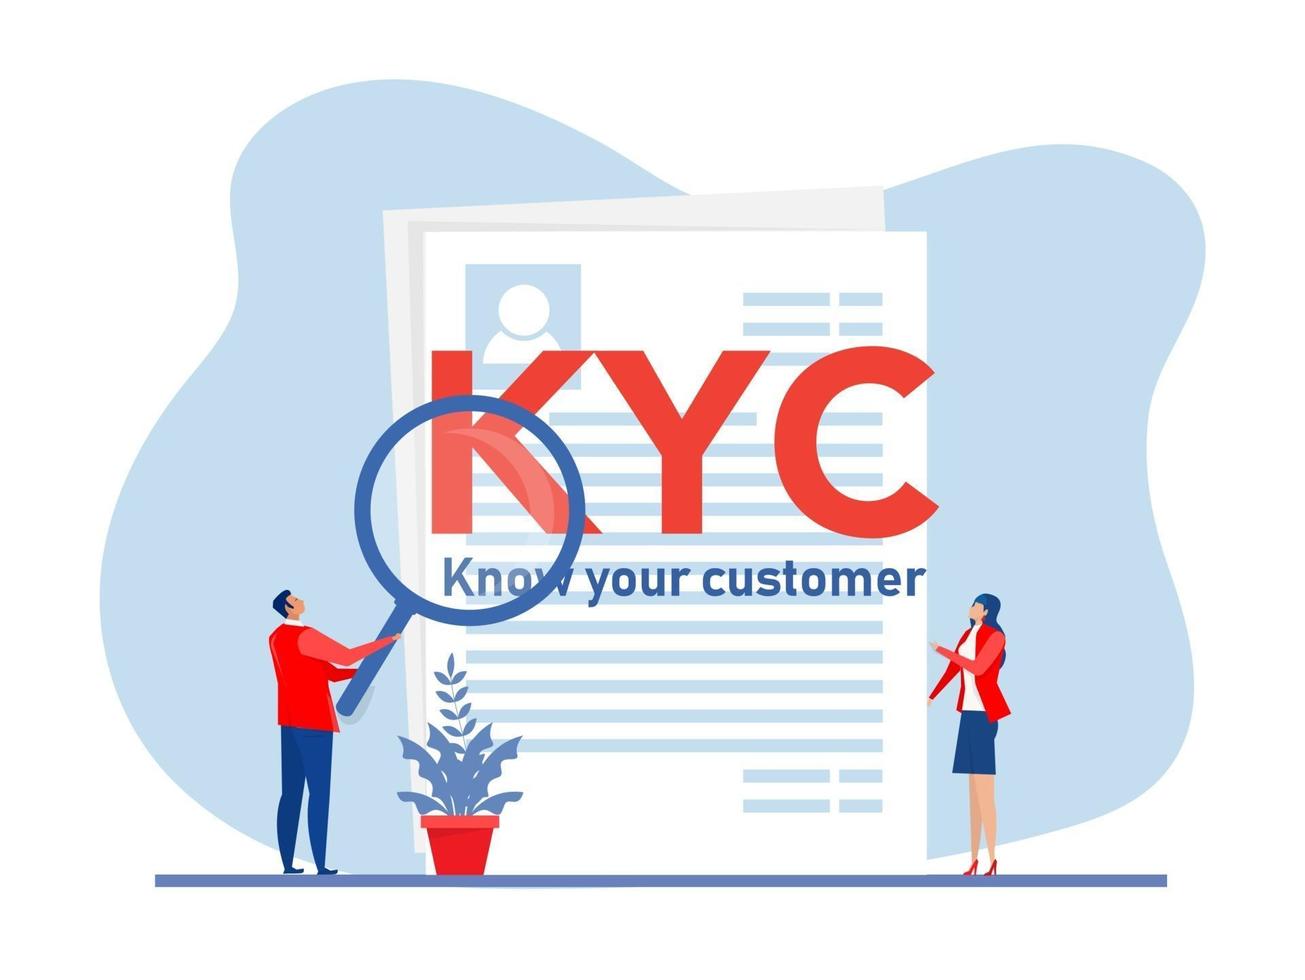 kyc ou conheça seu cliente com uma empresa que verifica a identidade vetor